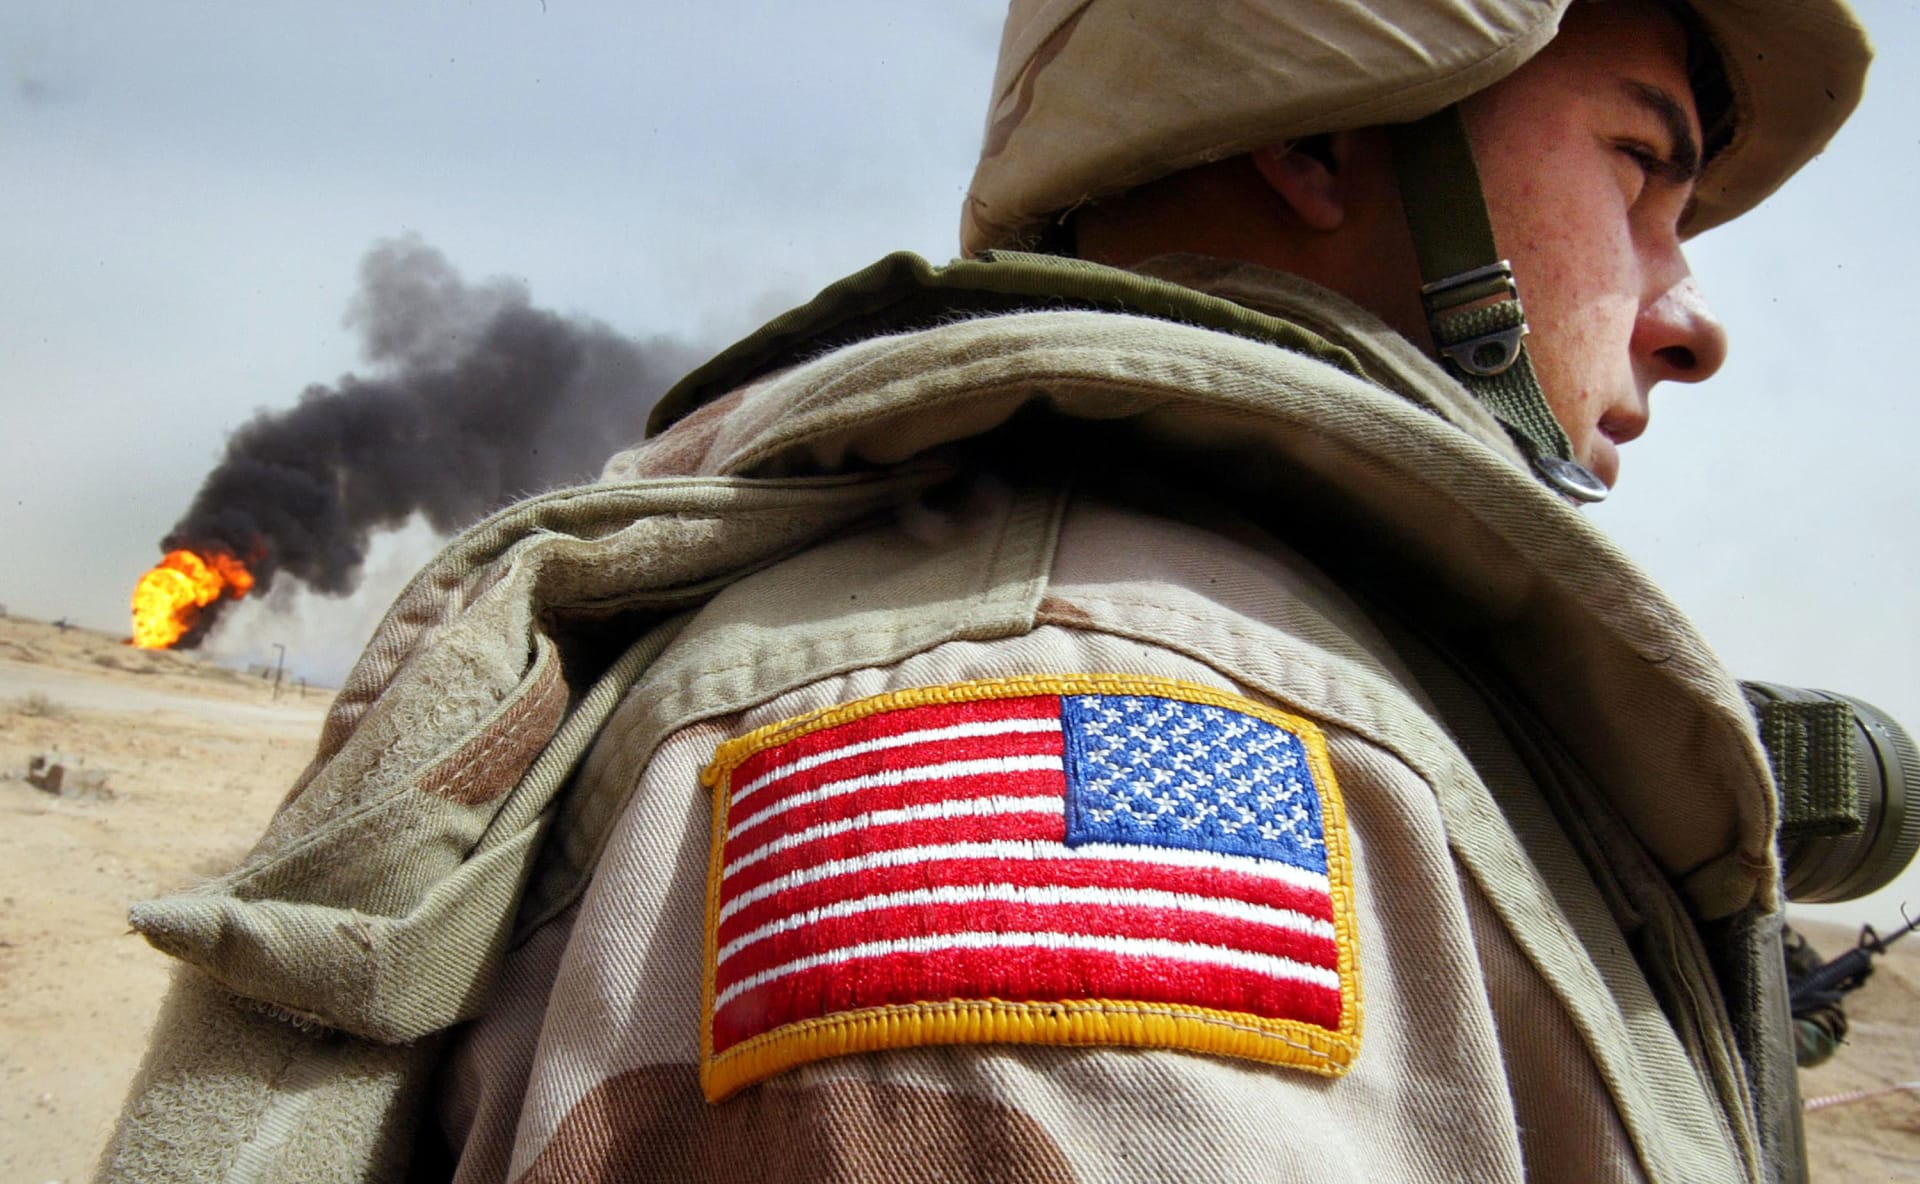 العراق يُعلن الاتفاق مع أمريكا على تحديد جدول زمني لسحب القوات الأجنبية تدريجيا من البلاد